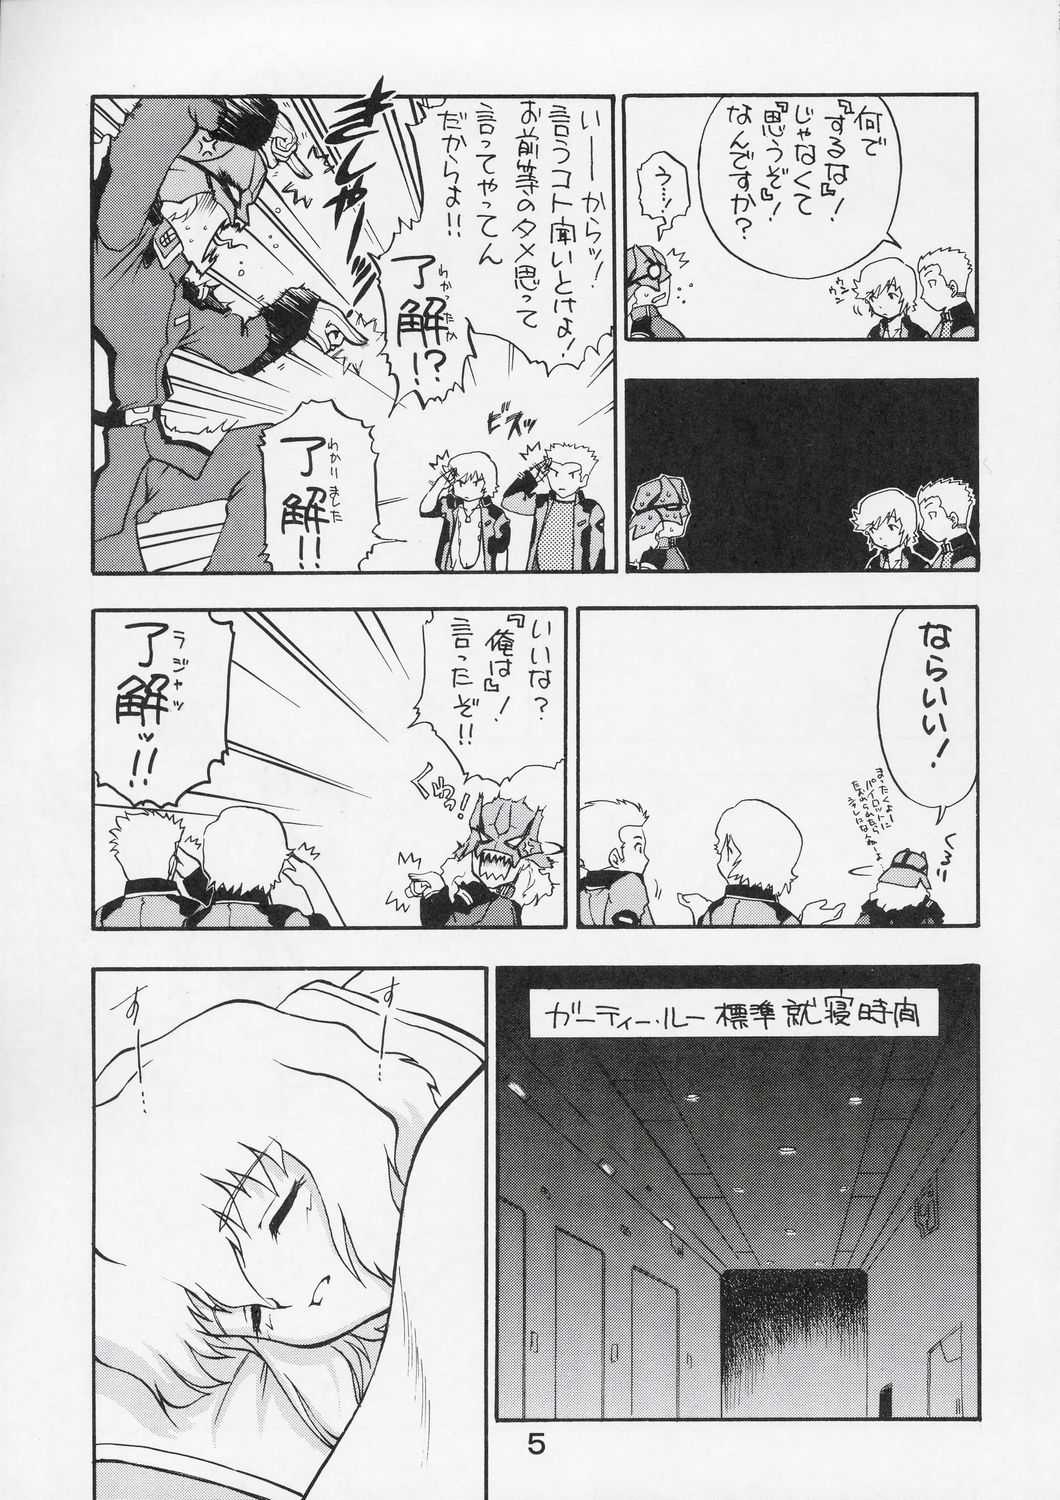 [Ekaki Koya (Nanjyo Asuka)] Kitsch 27 (Gundam Seed Destiny) 